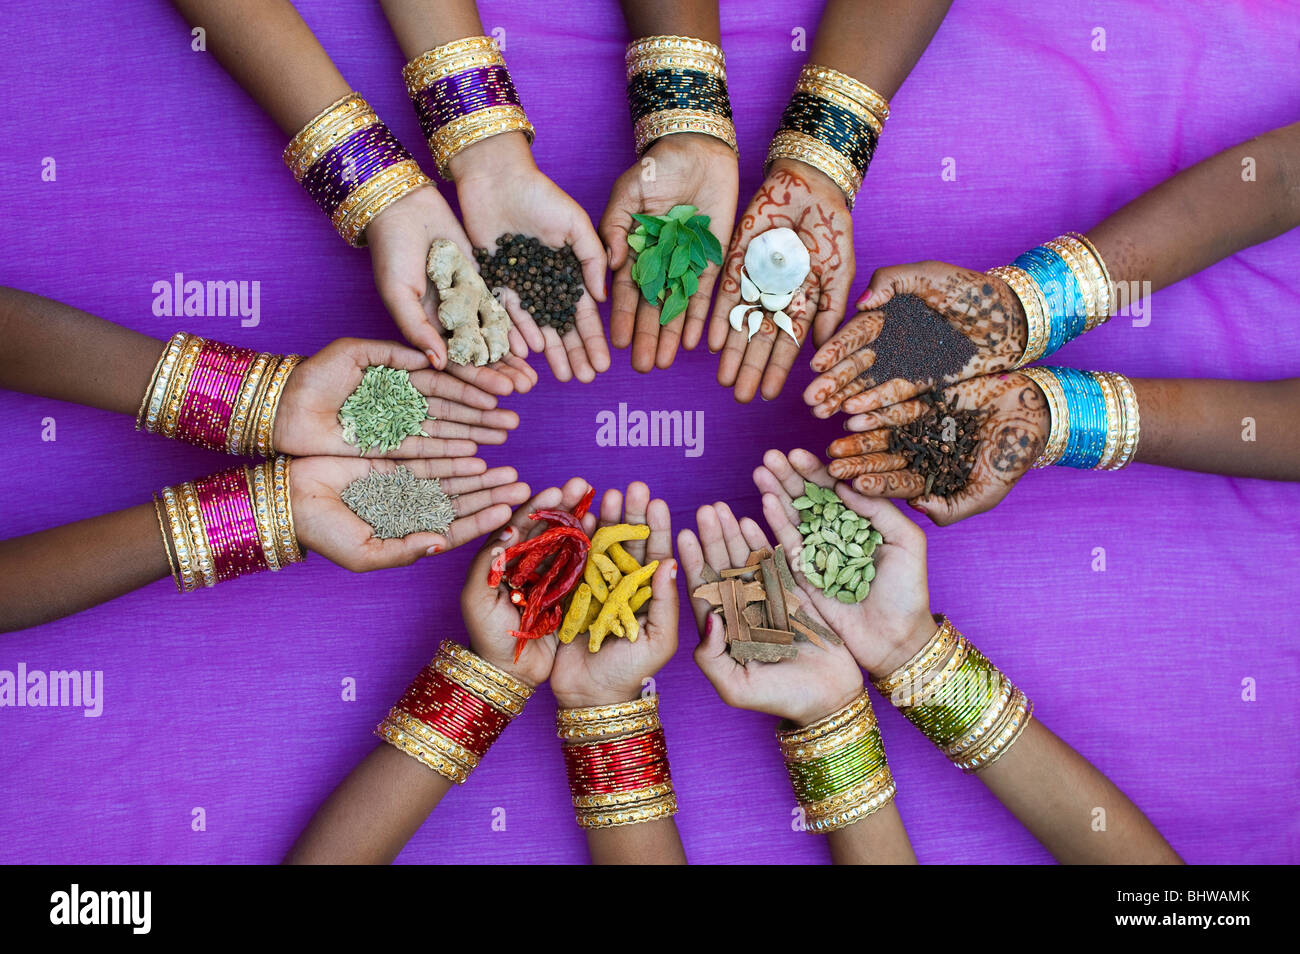 Indische Kinder Hände halten verschiedene indische Küche Gewürze gegen einen violetten Hintergrund. Indien Stockfoto